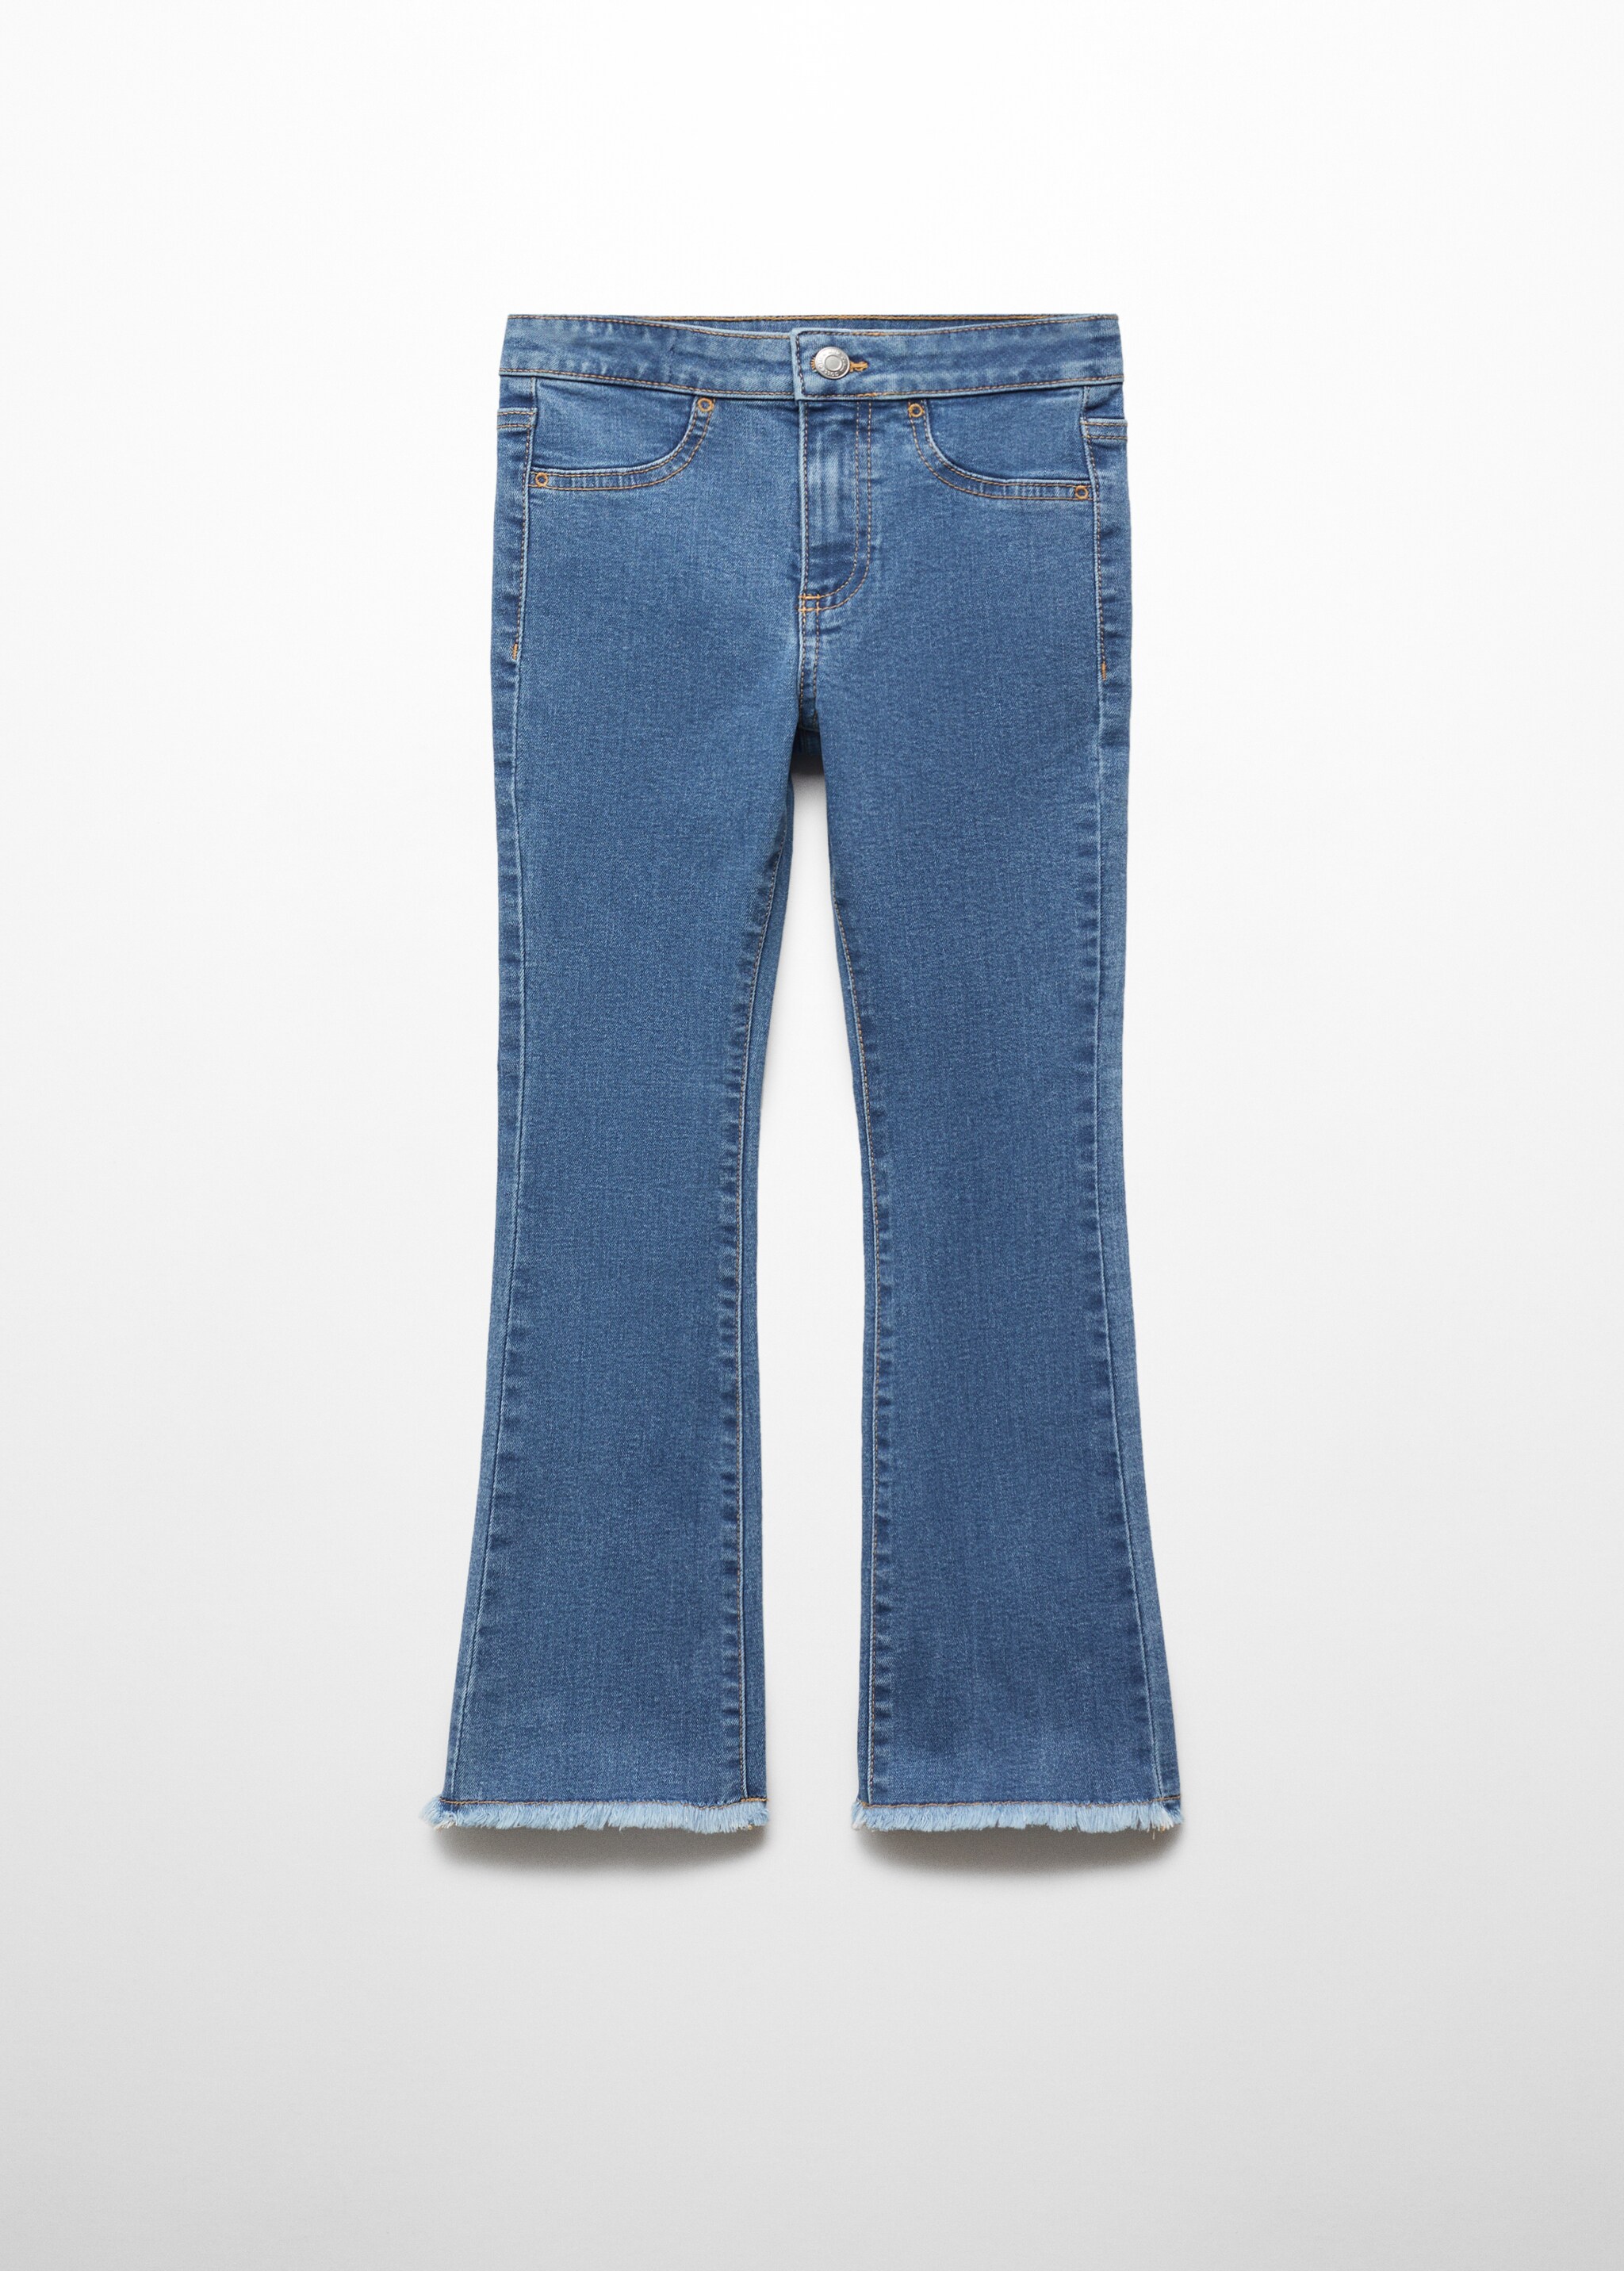 Jeans flare terminaciones deshilachadas - Artículo sin modelo